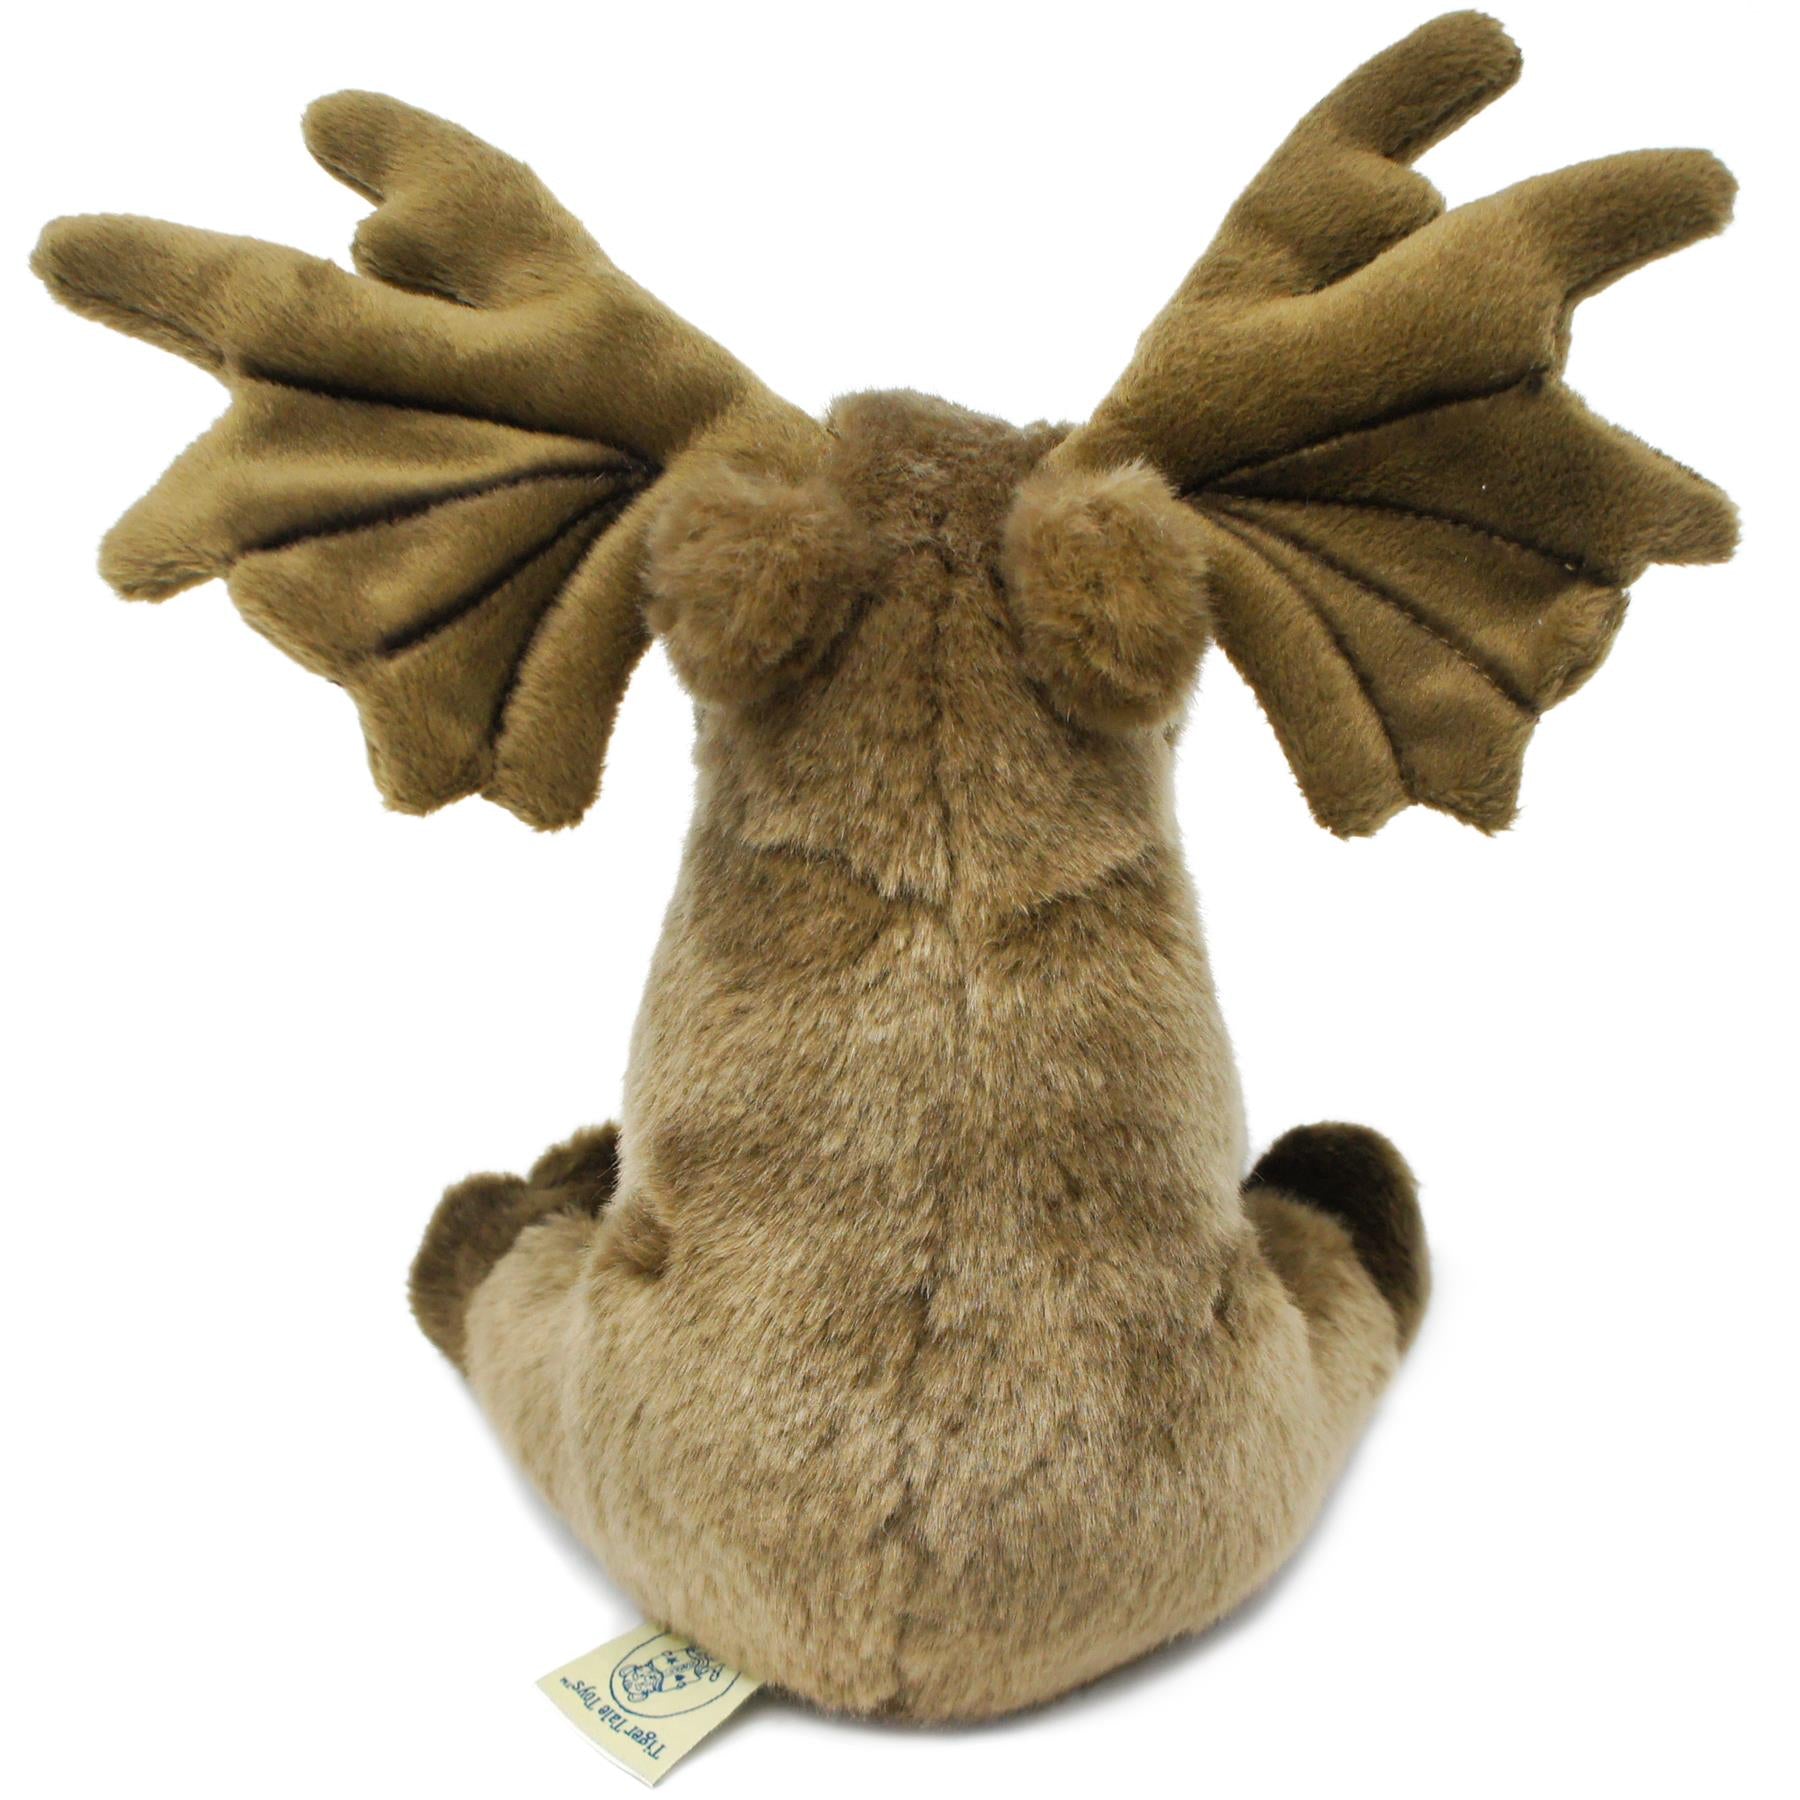 Stuffed Animal Plush - Martin the Moose